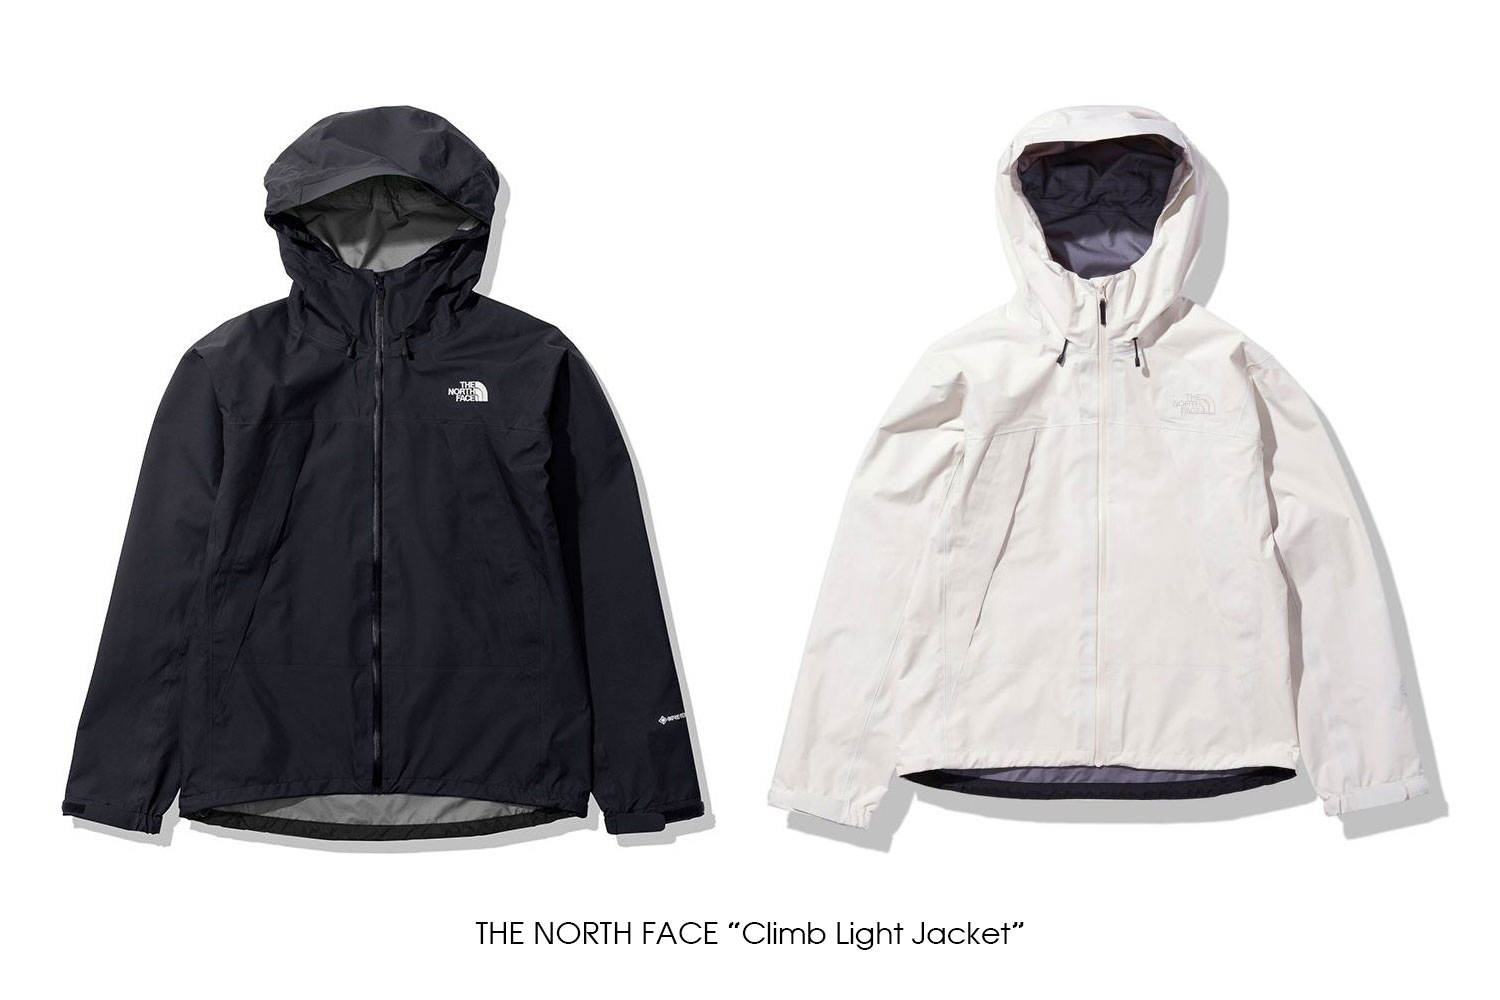 THE NORTH FACE "Climb Light Jacket"